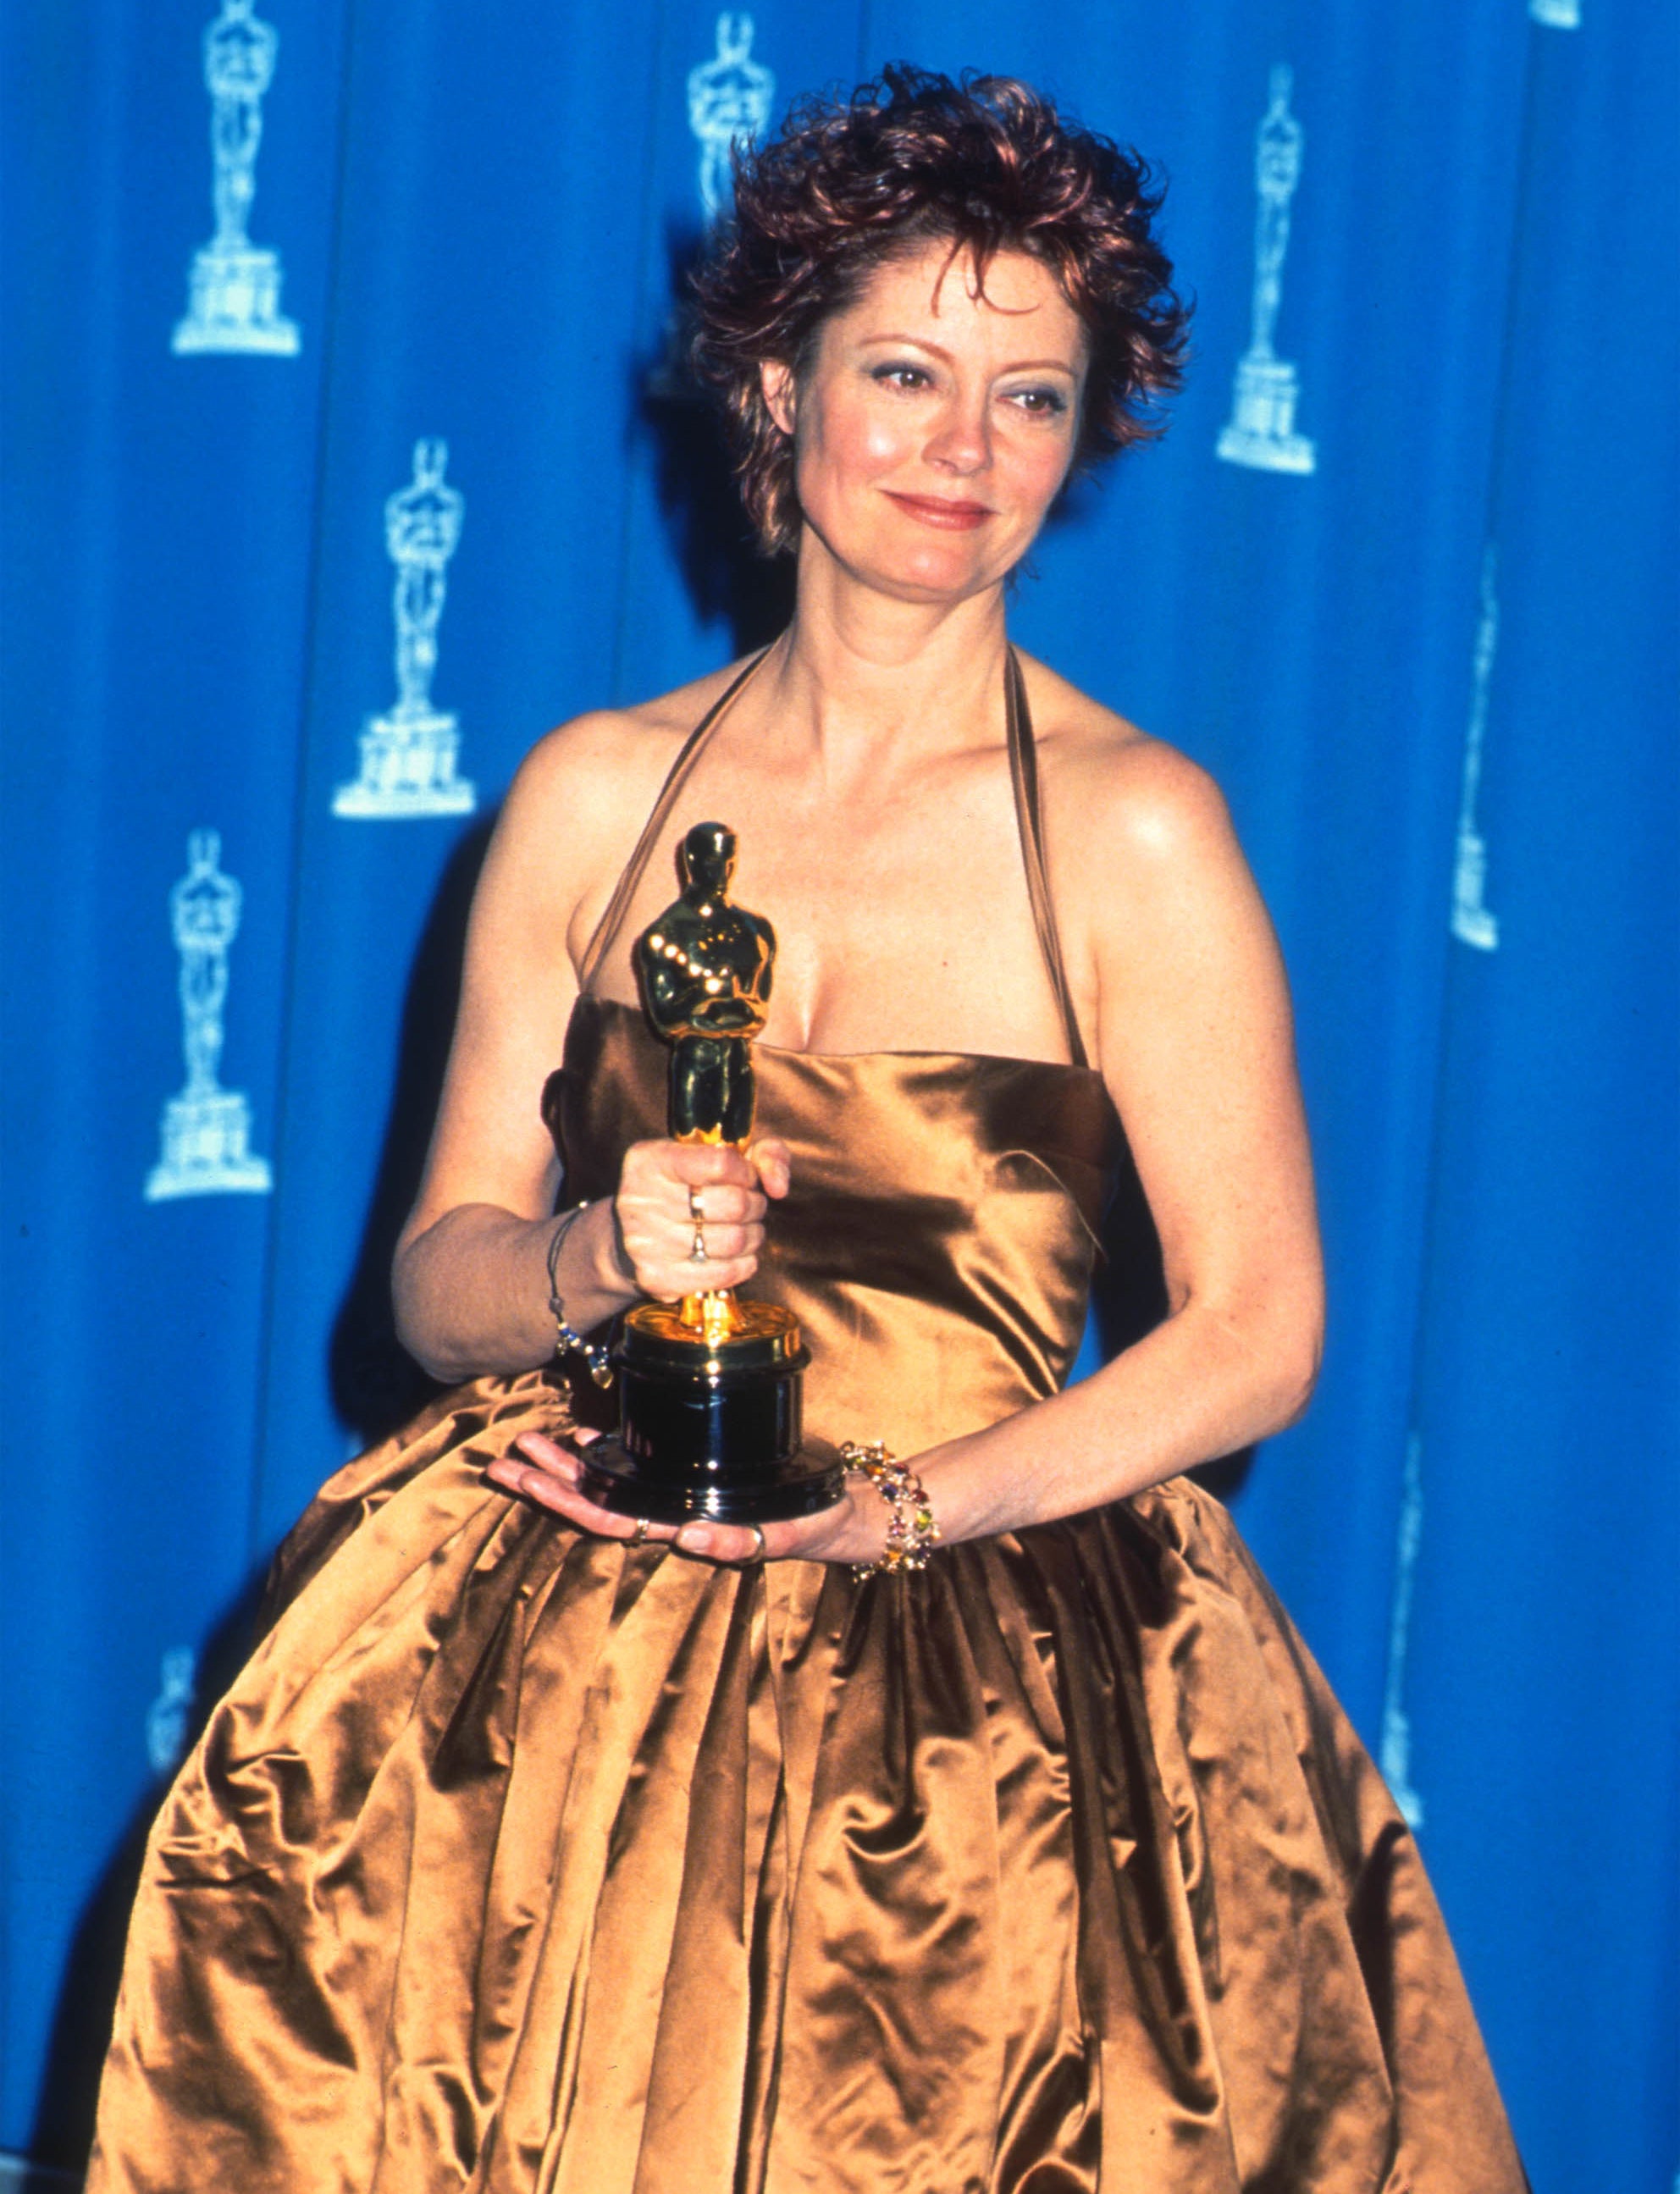 Susan Sarandon receives an Oscar at the 1996 Academy Awards